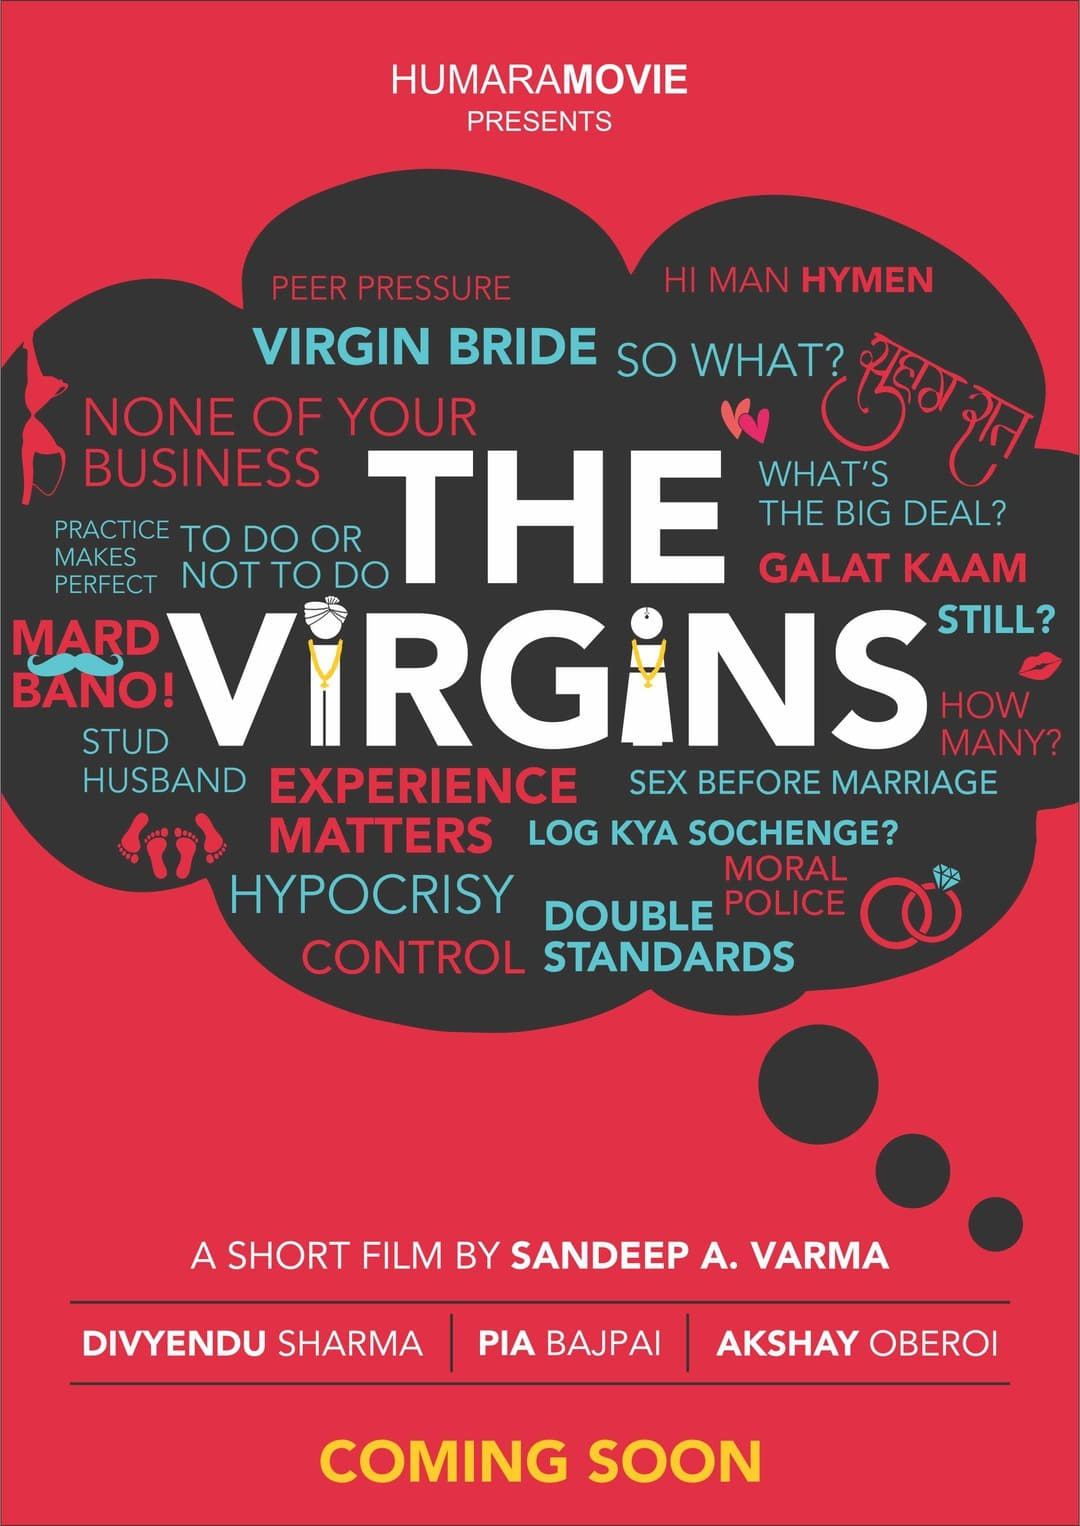 The Virgins